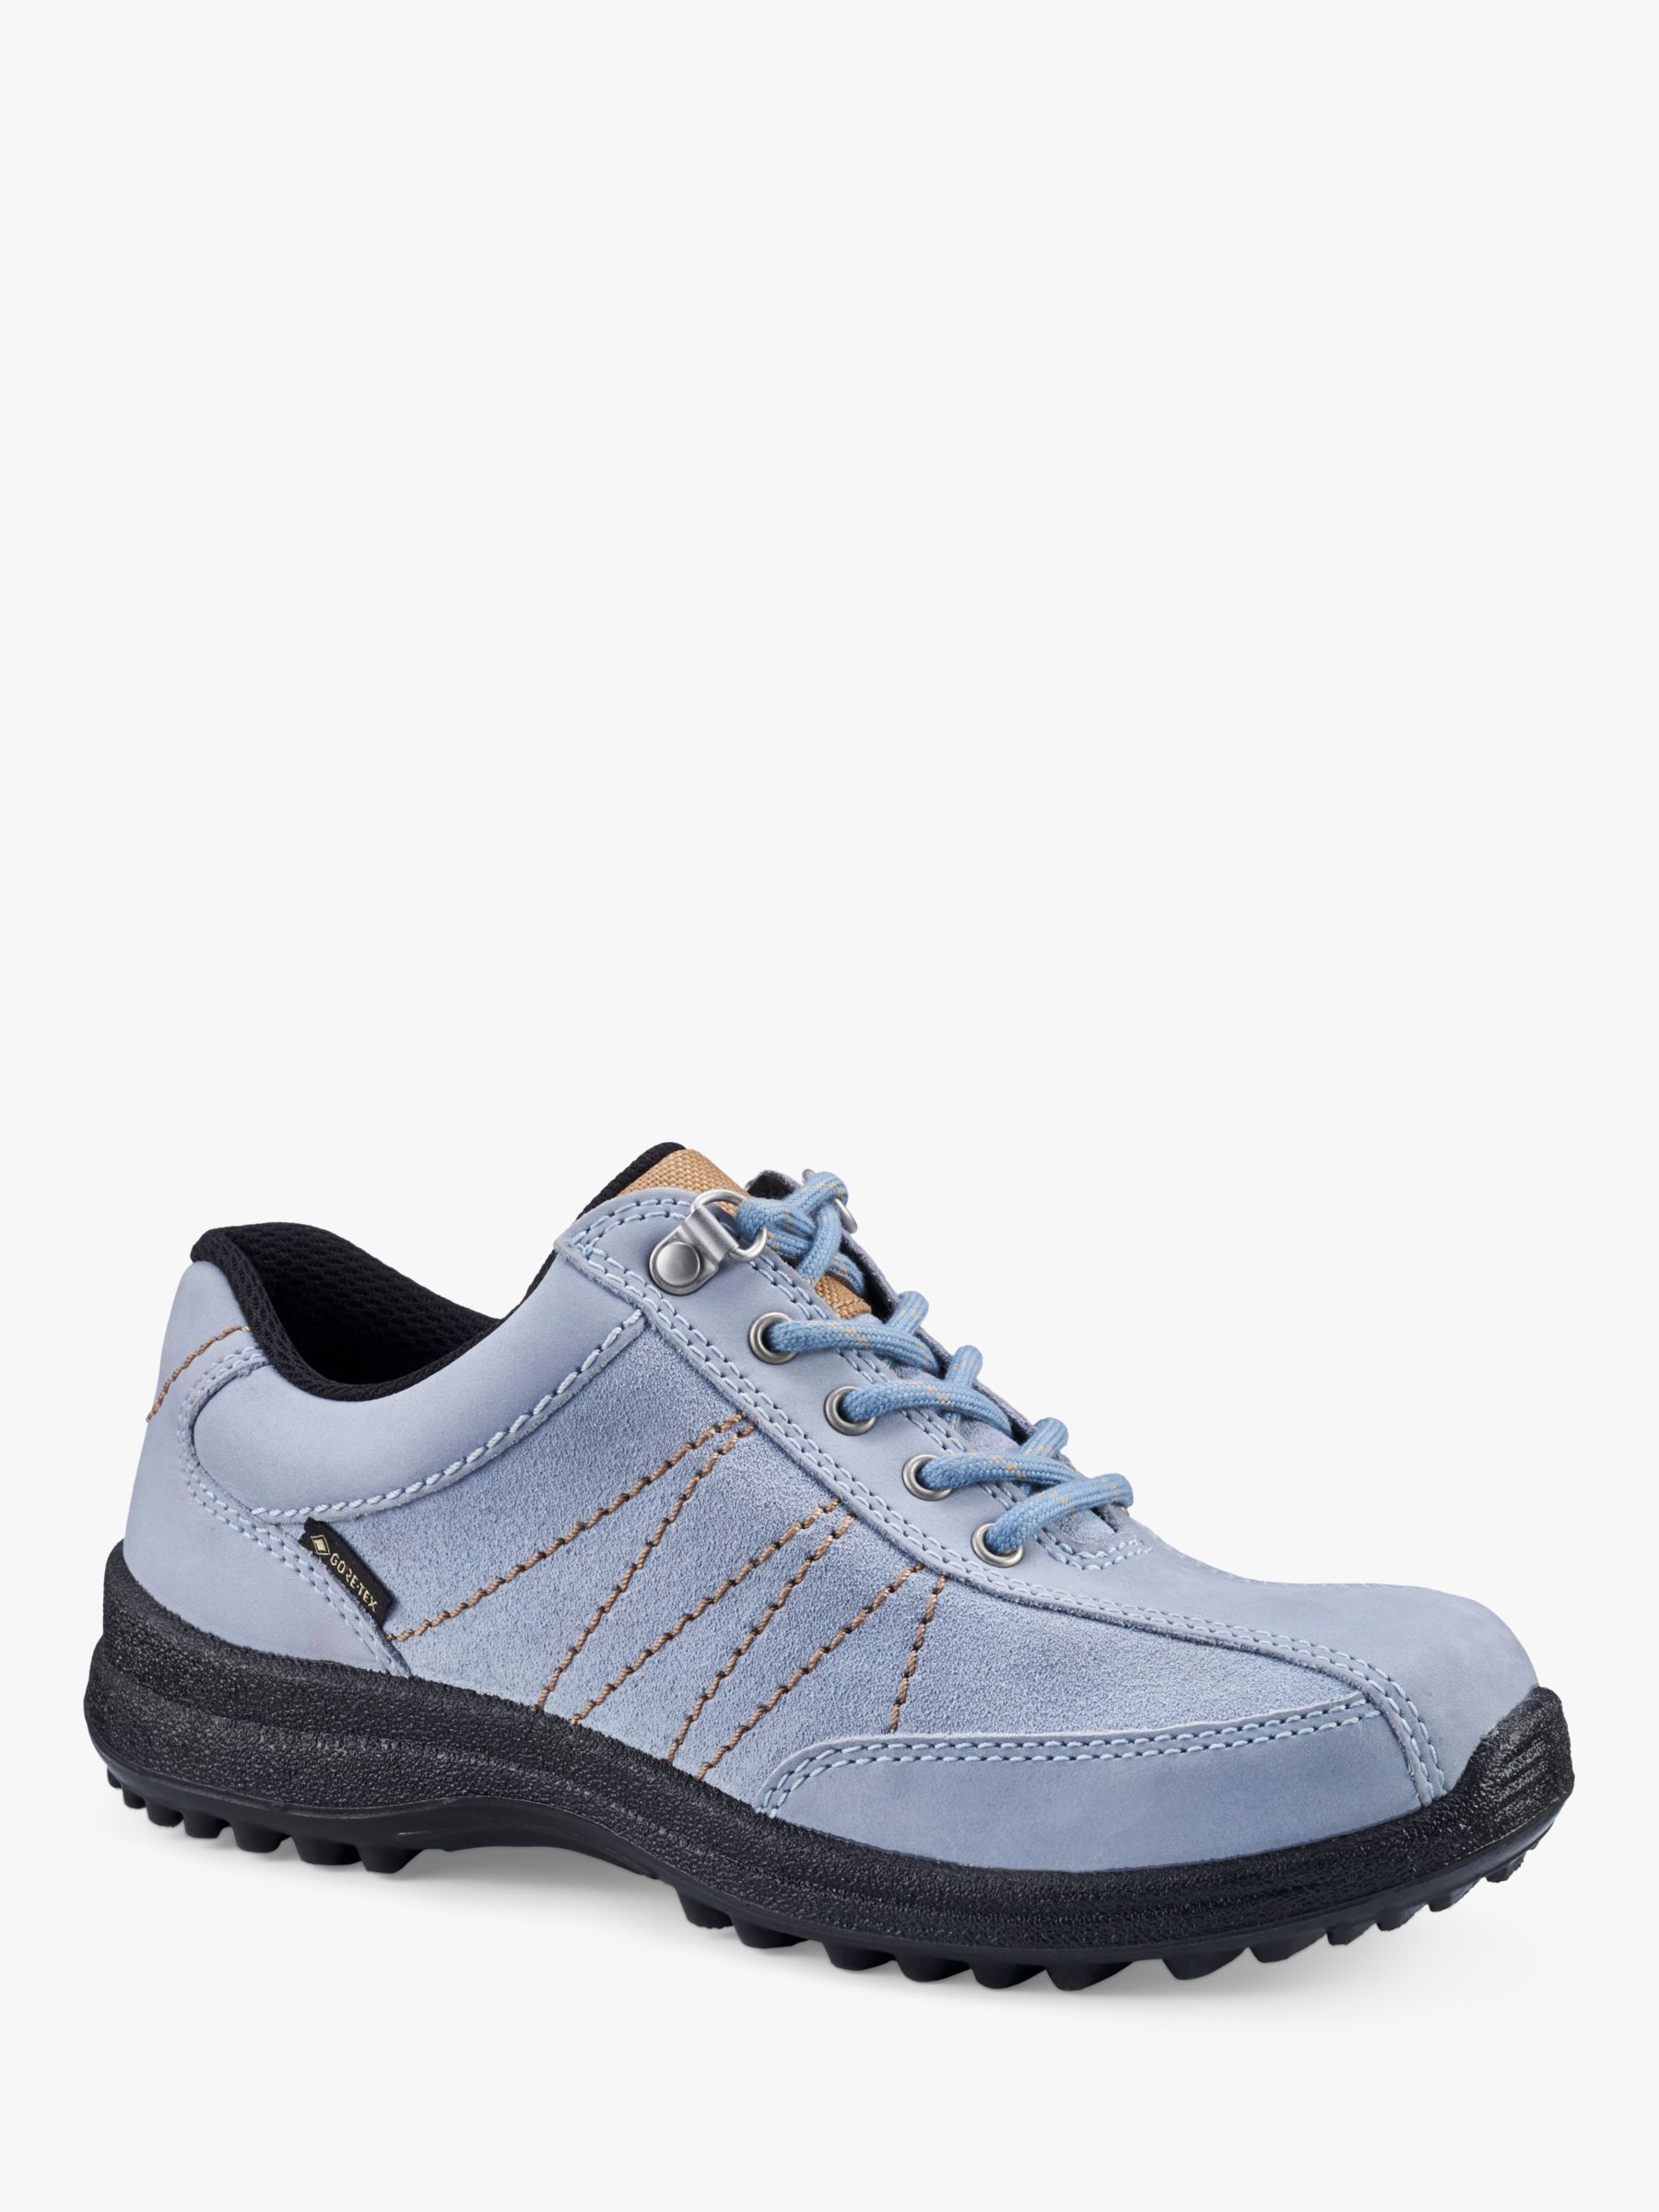 Hotter Mist Gore-Tex Walking Shoes, Cashmere Blue, 6